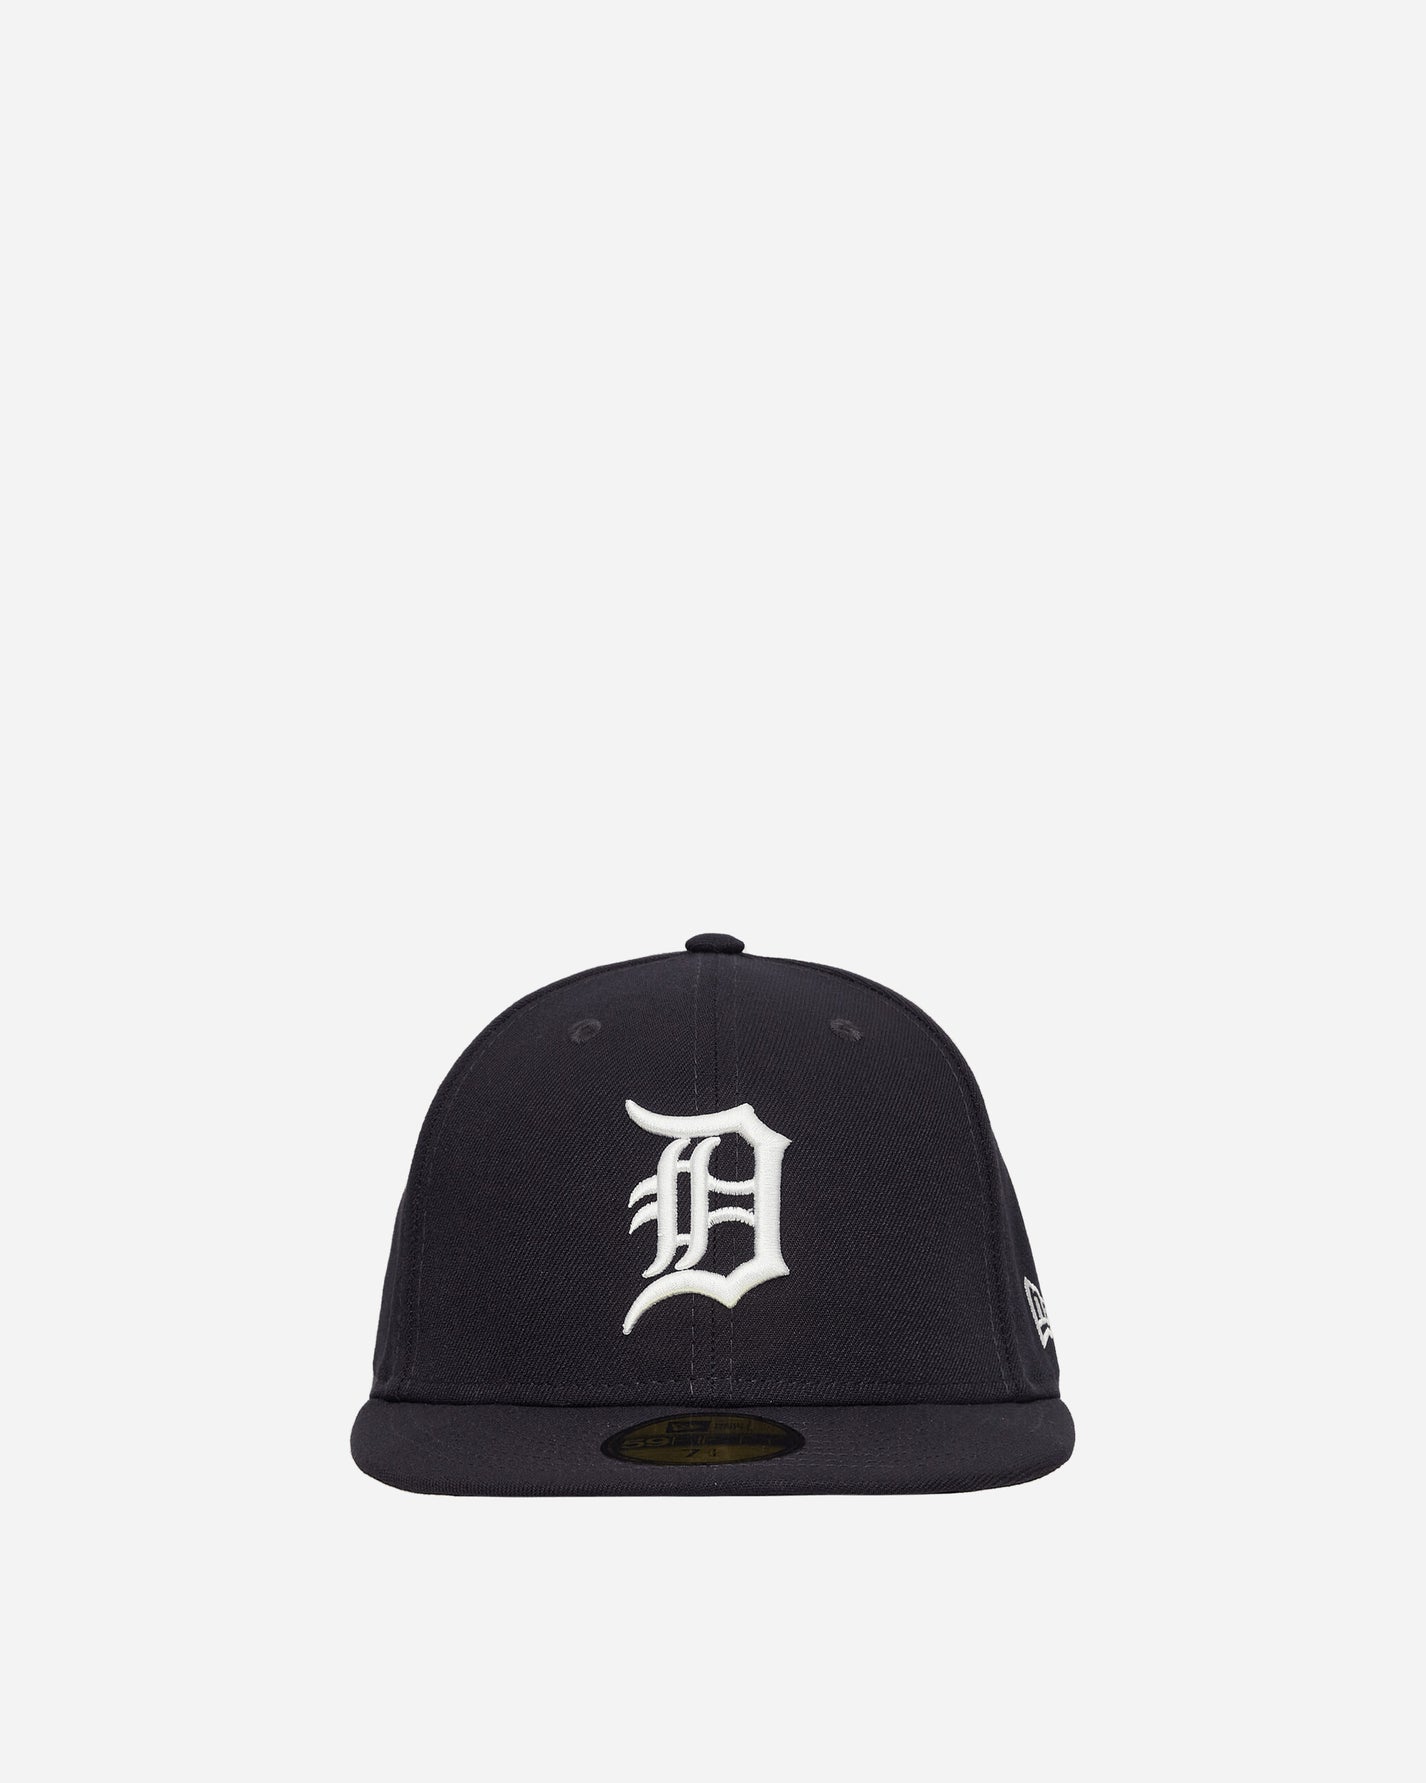 New Era 59Fifty Detroit Tigers Detroit Tigers Hats Caps 12572844 001